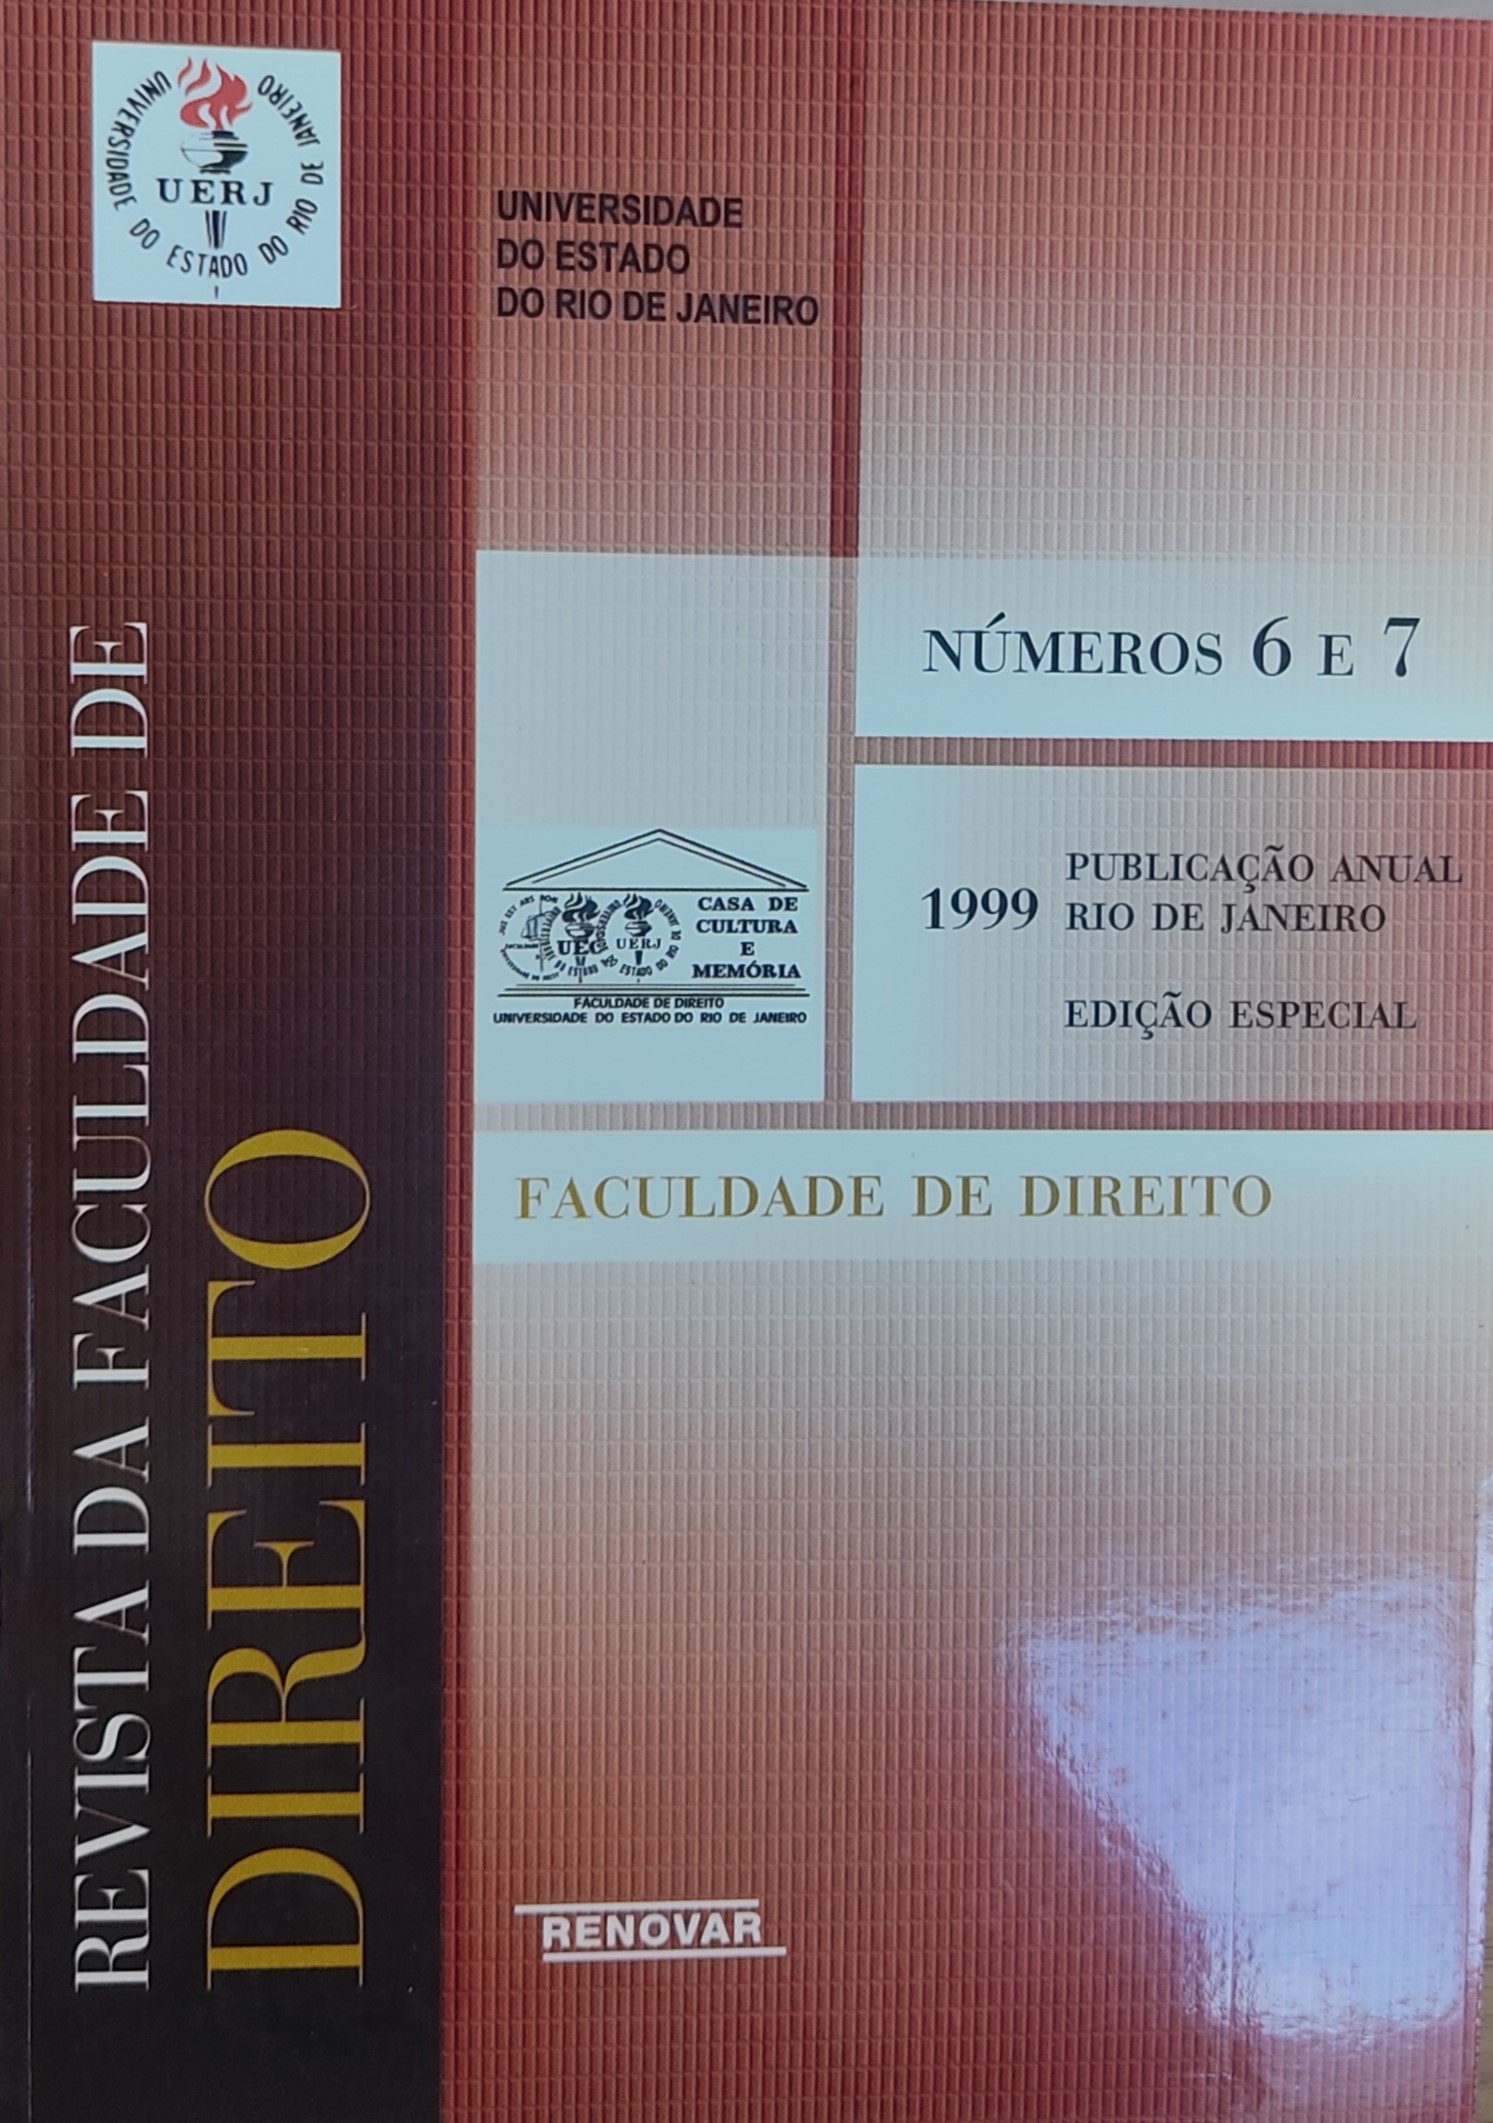 					View No. 6, 7 (1998) (1999): Revista da Faculdade de Direito da UERJ - RFD
				